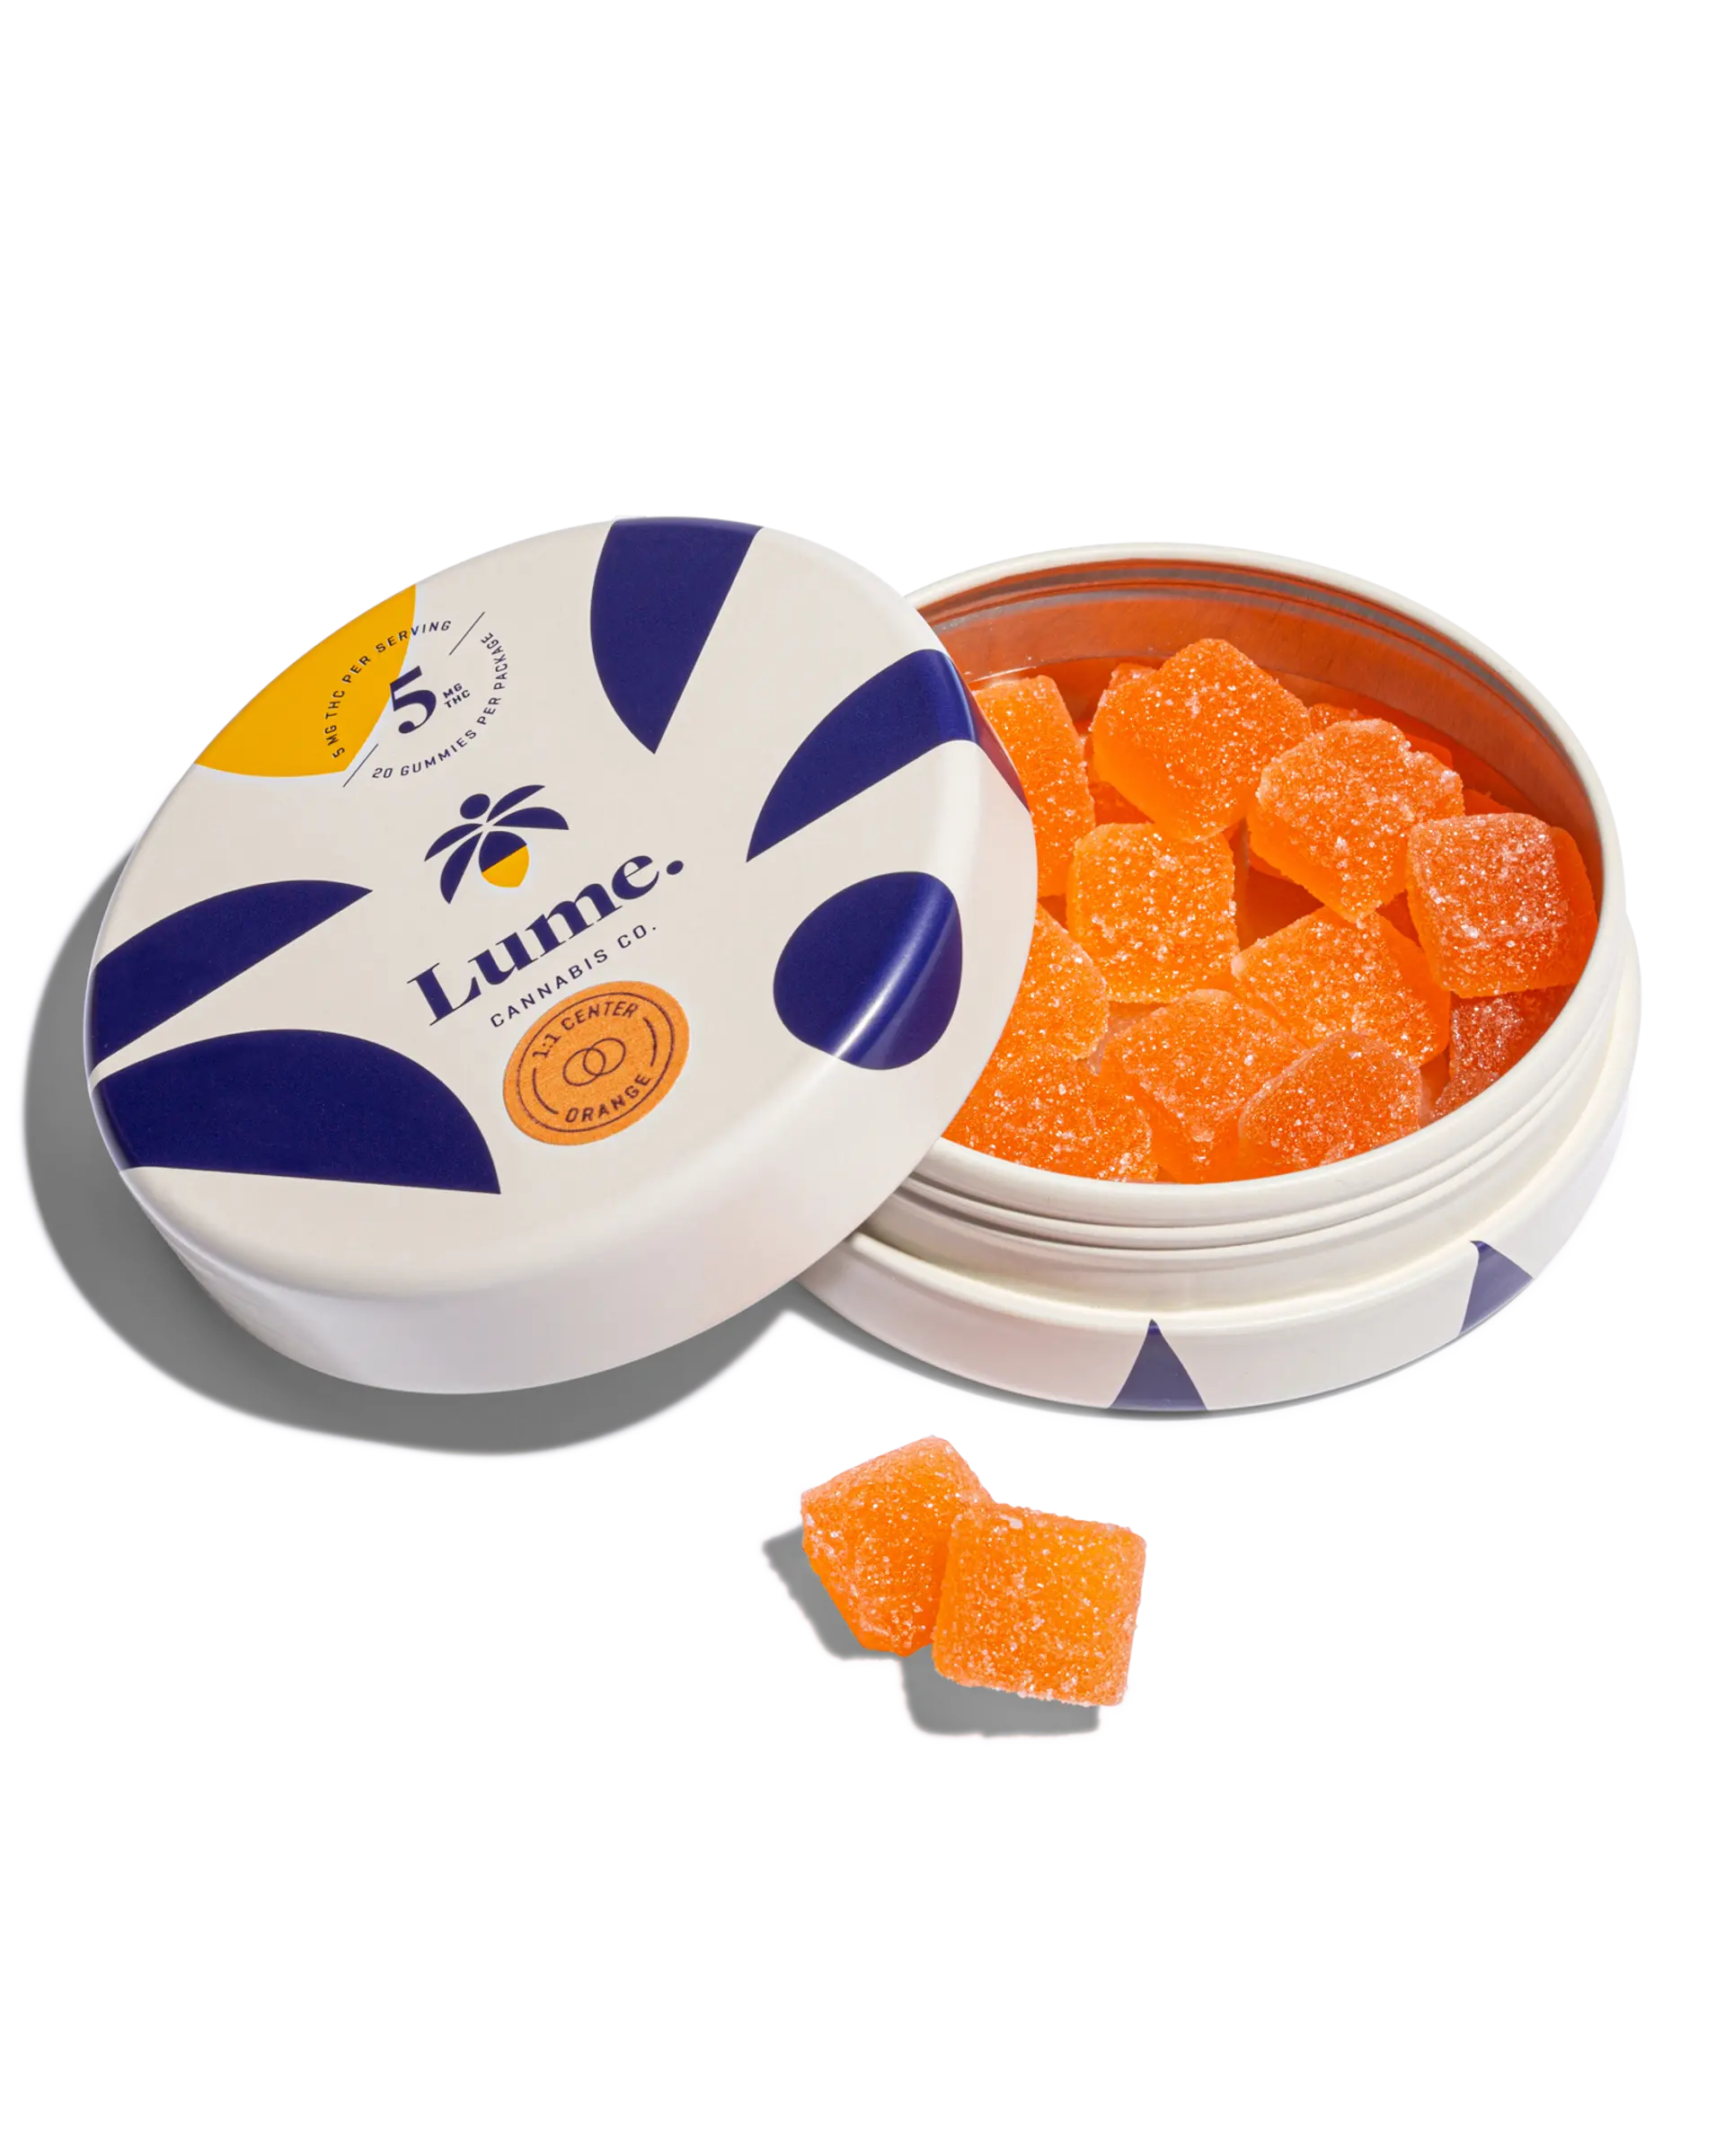 Be Well Gummies - 2:1 Orange – Infused by LĒVO